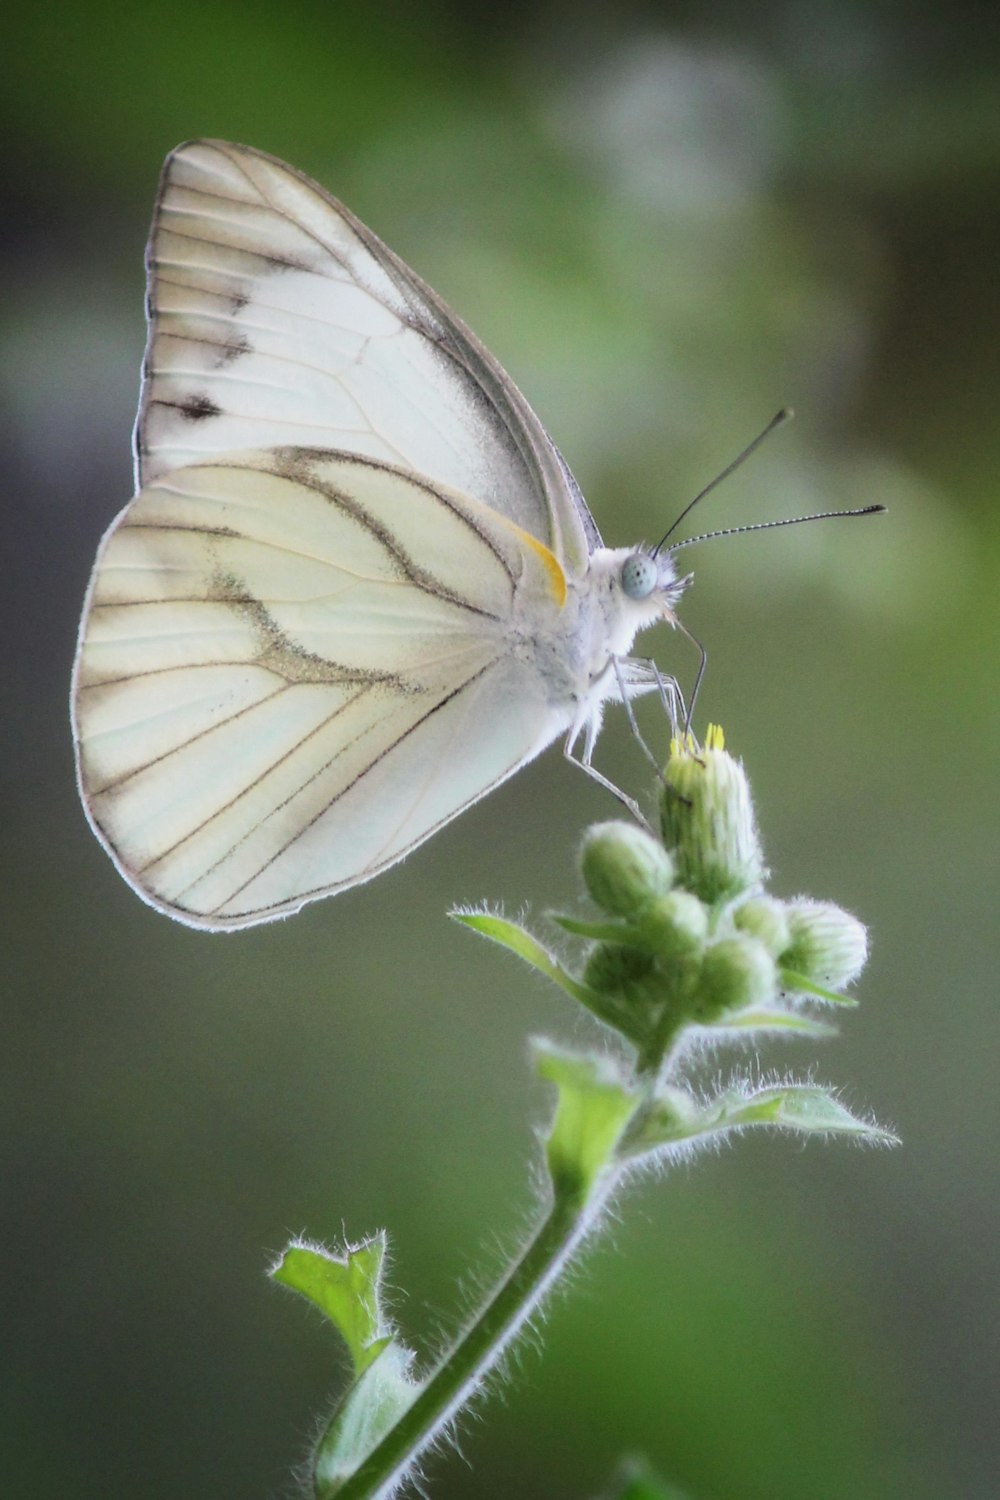 papillon blanc et gris perché sur une plante verte